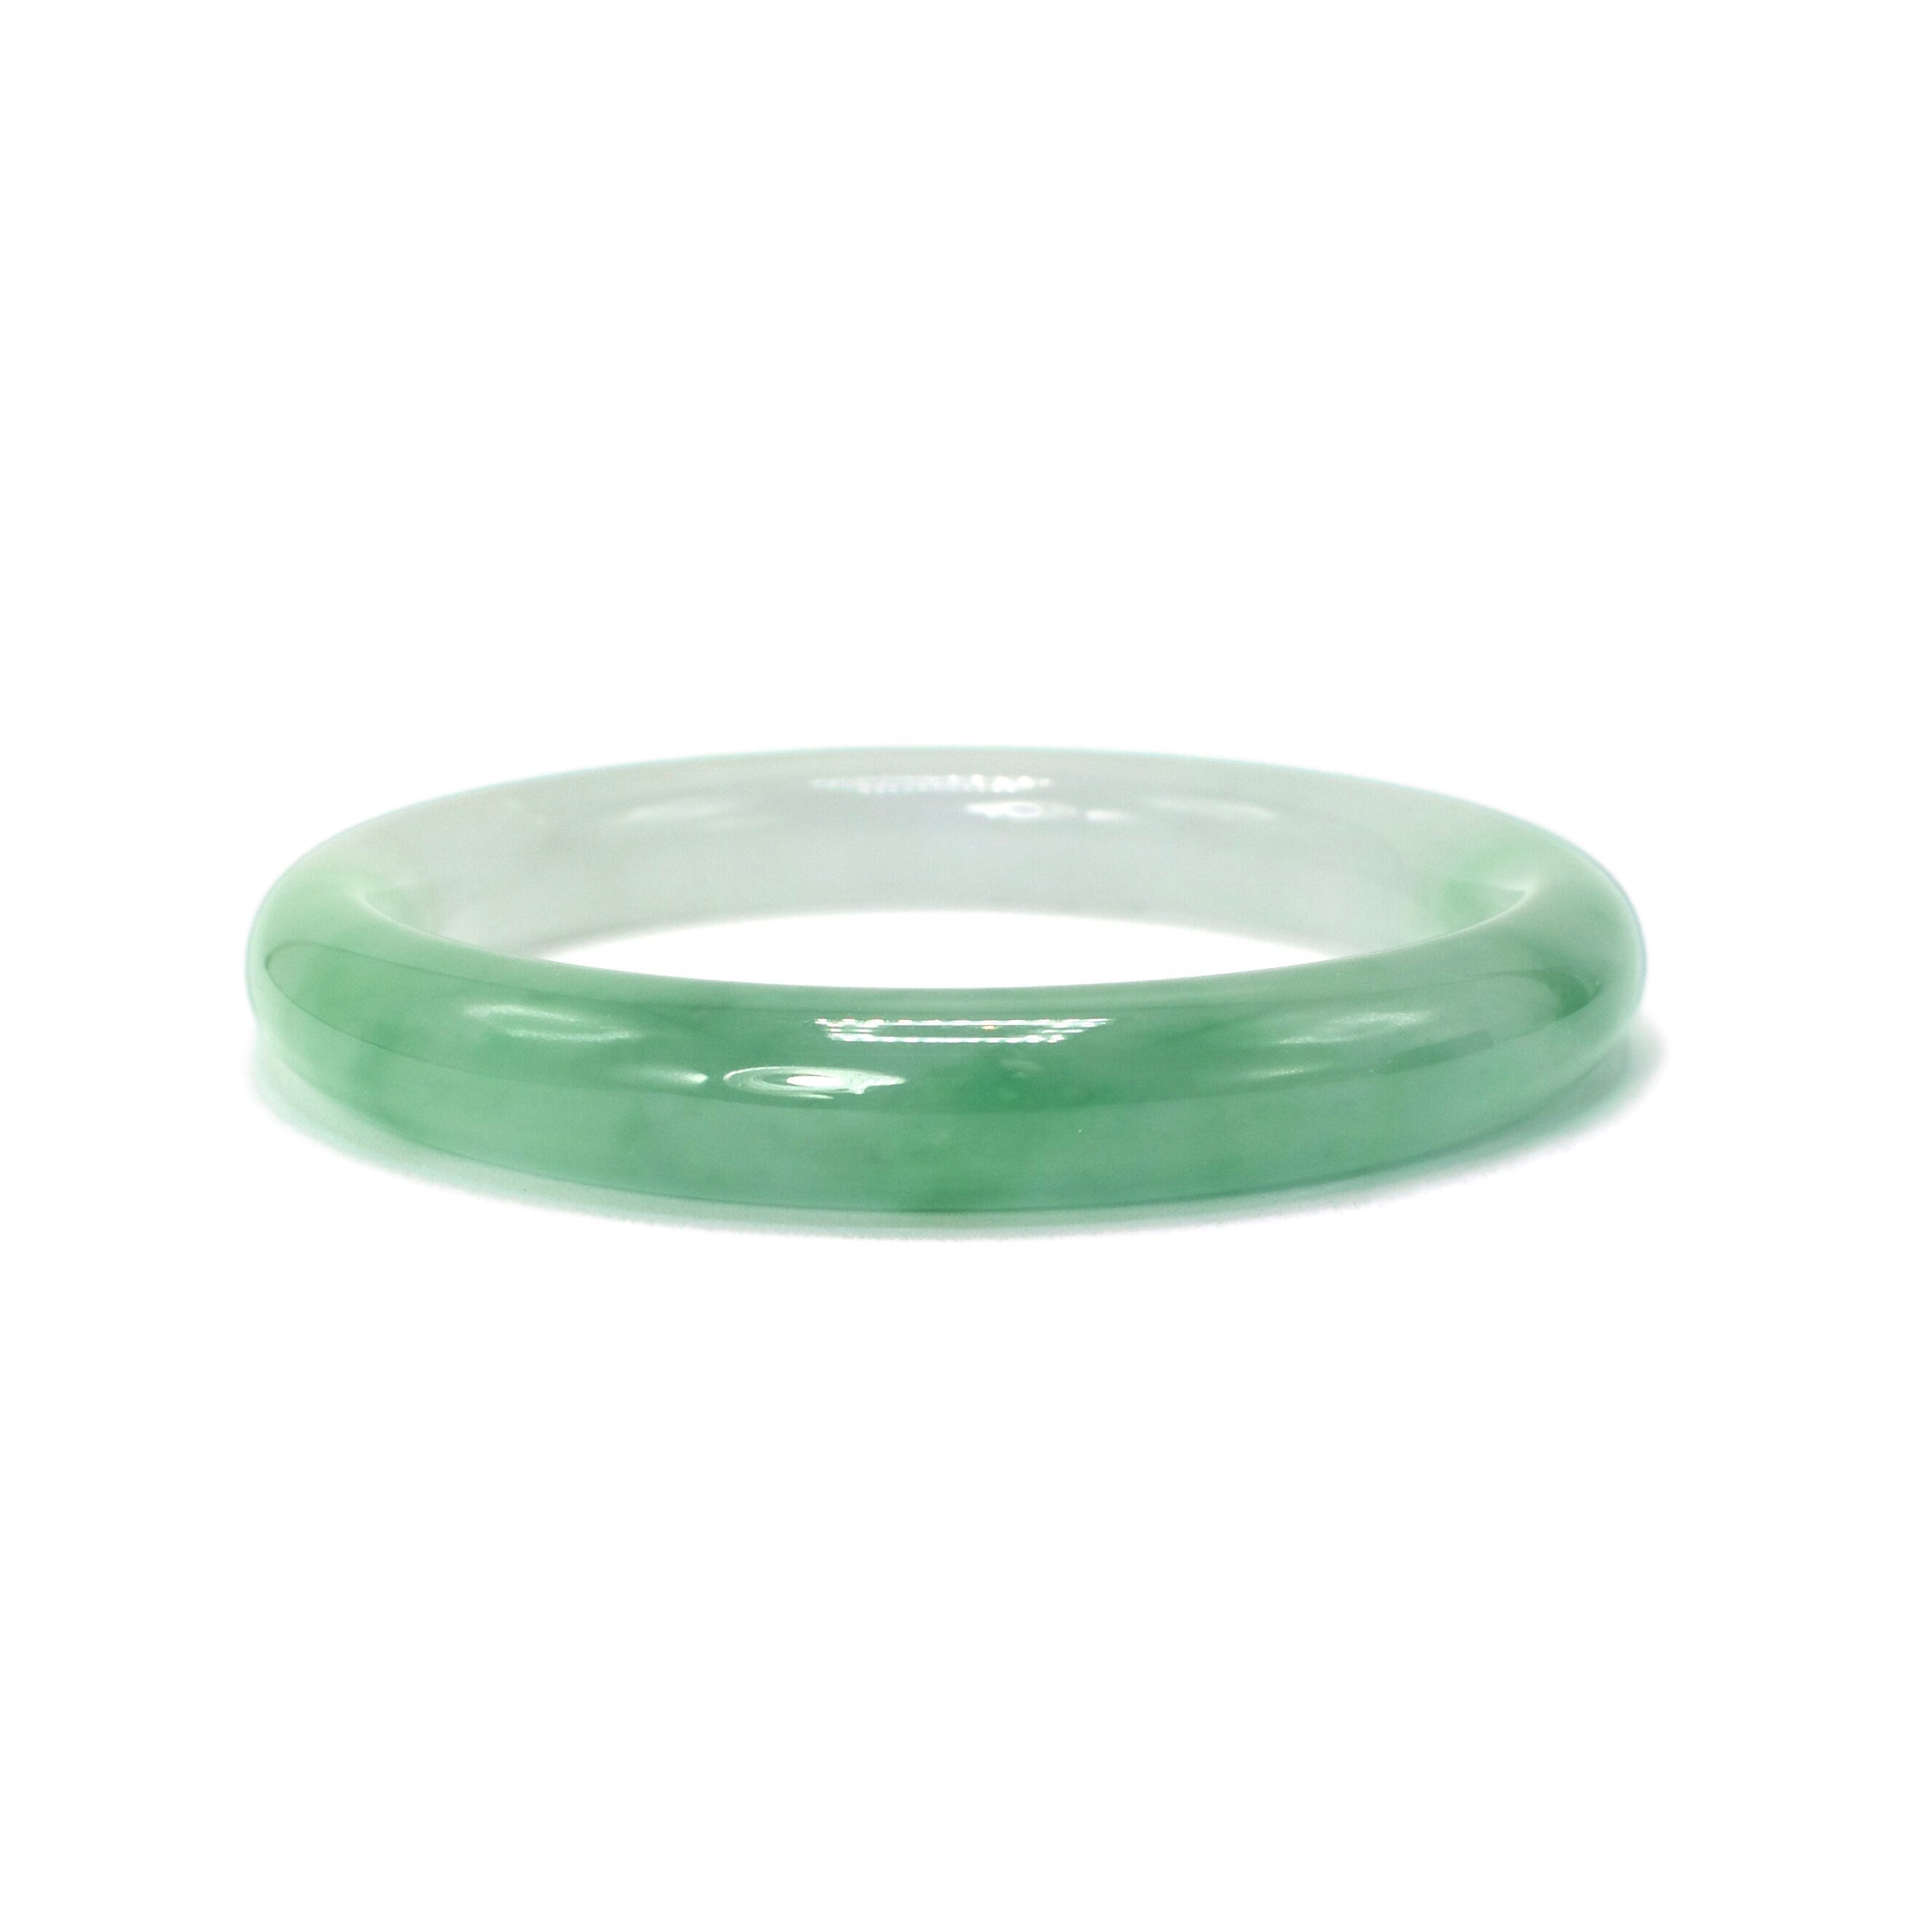 Small Sized Jadeite Jade Hololith Bangle Bracelet